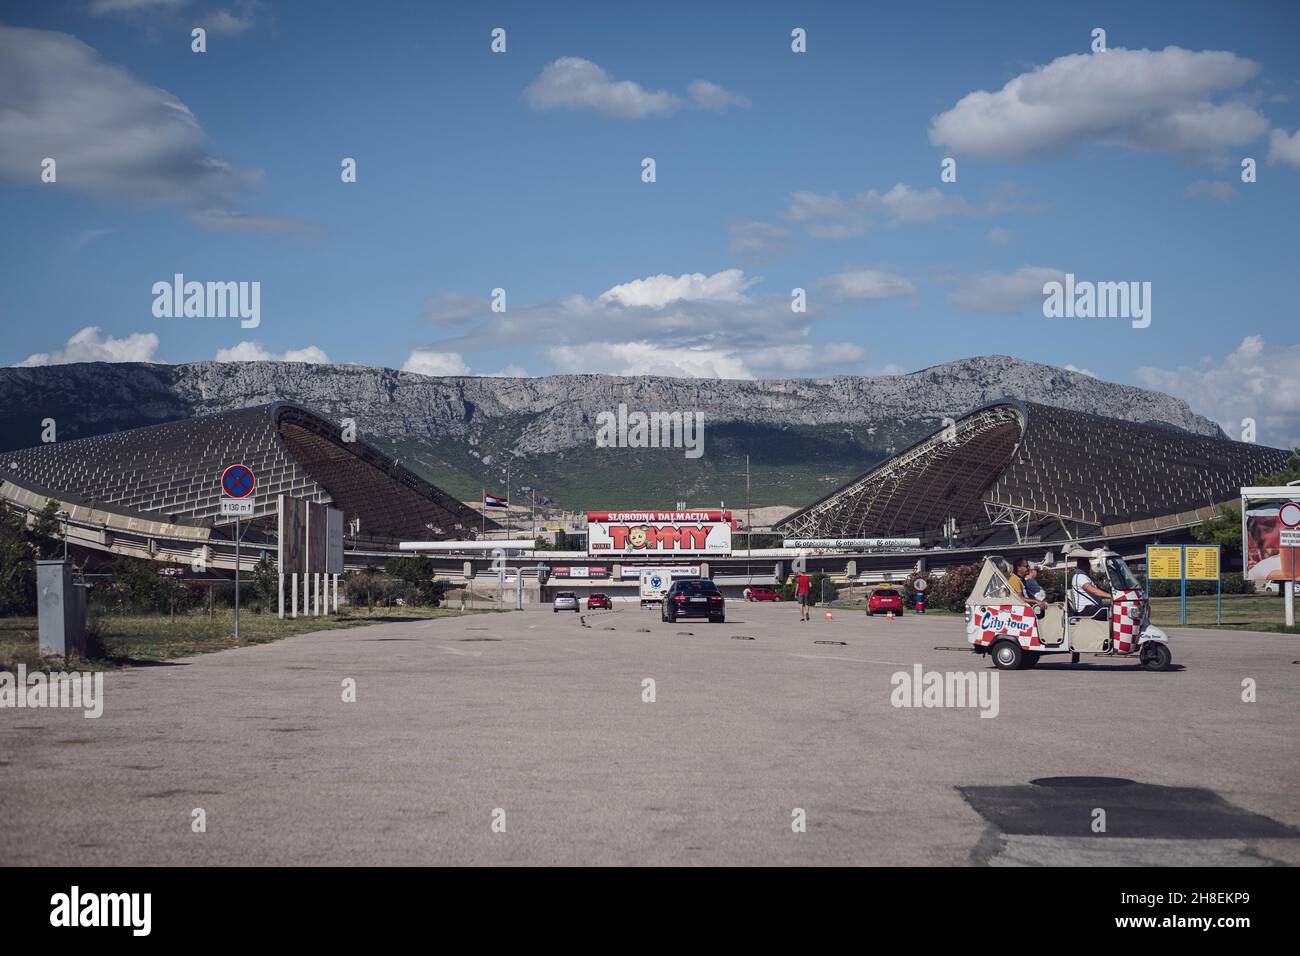 Außenansicht vom Stadion Poljud von Hajduk Split Stock Photo